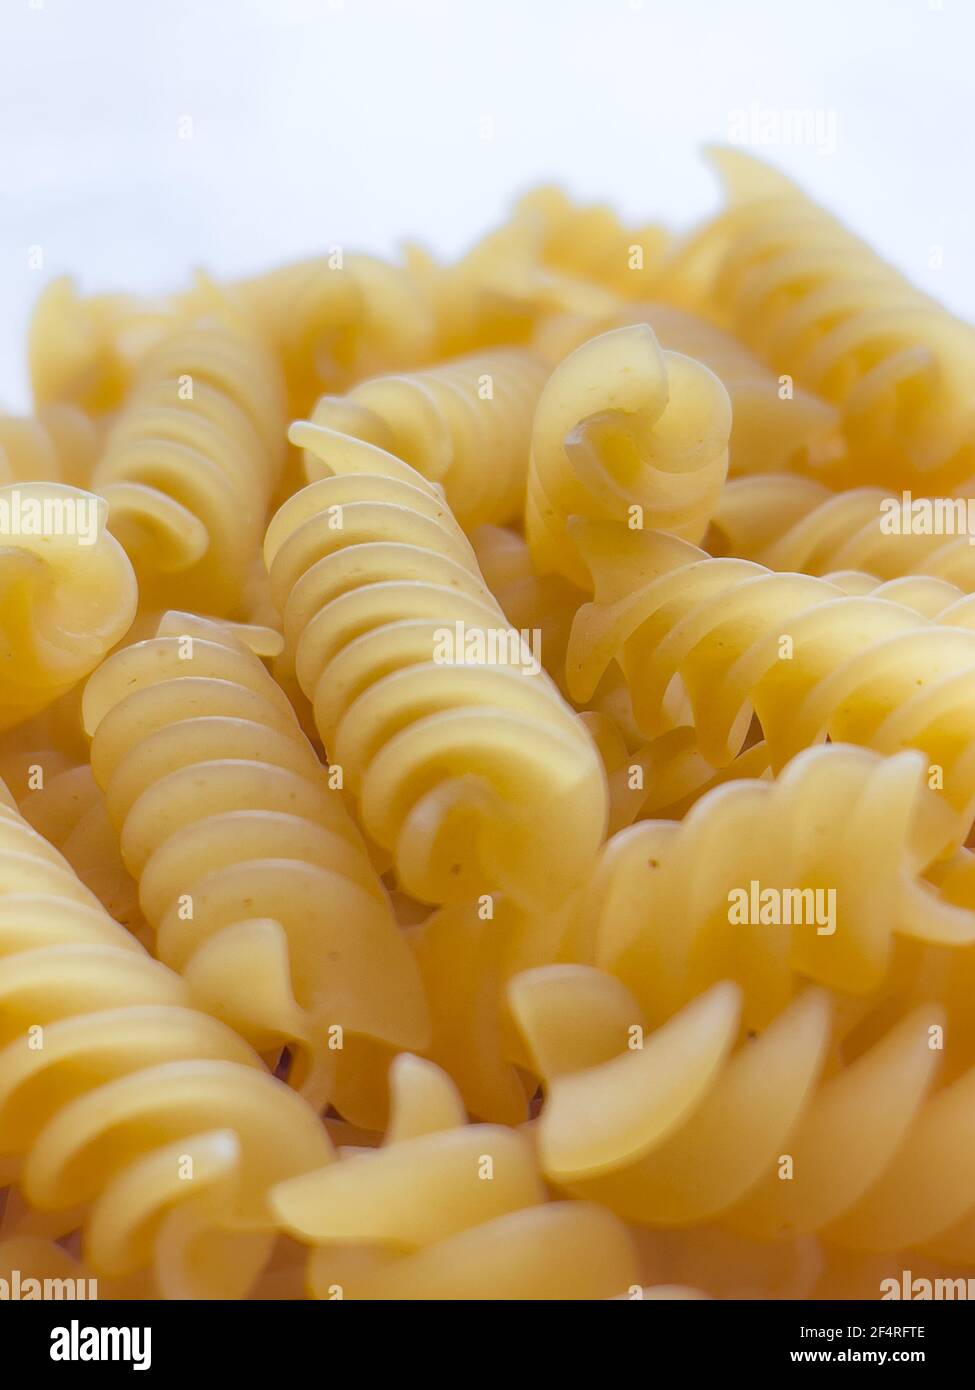 Fond ou texture de la nourriture pâtes italiennes sèches crues en forme de spirale. Gros plan, macro. Macaroni non cuit Banque D'Images